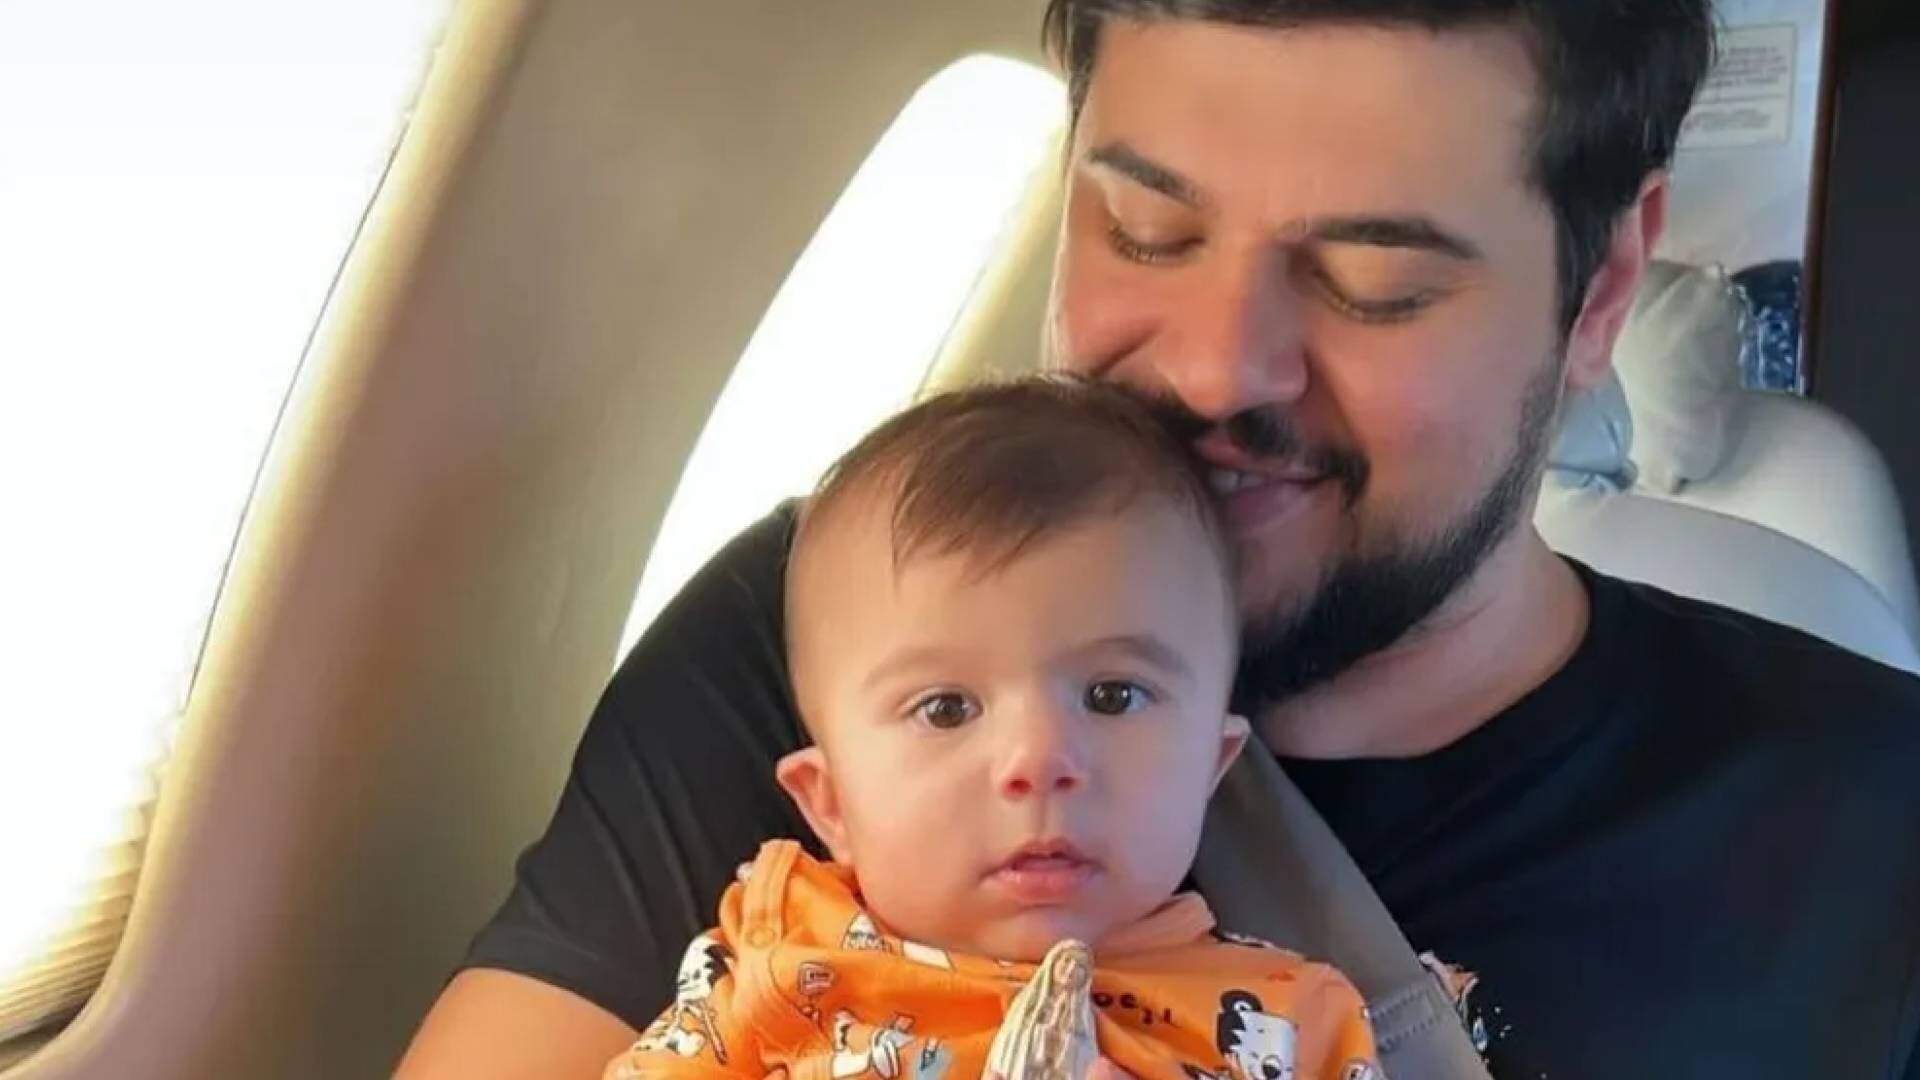 Cristiano, da dupla com Zé Neto, atualiza estado de saúde do filho após cirurgia delicada - Metropolitana FM